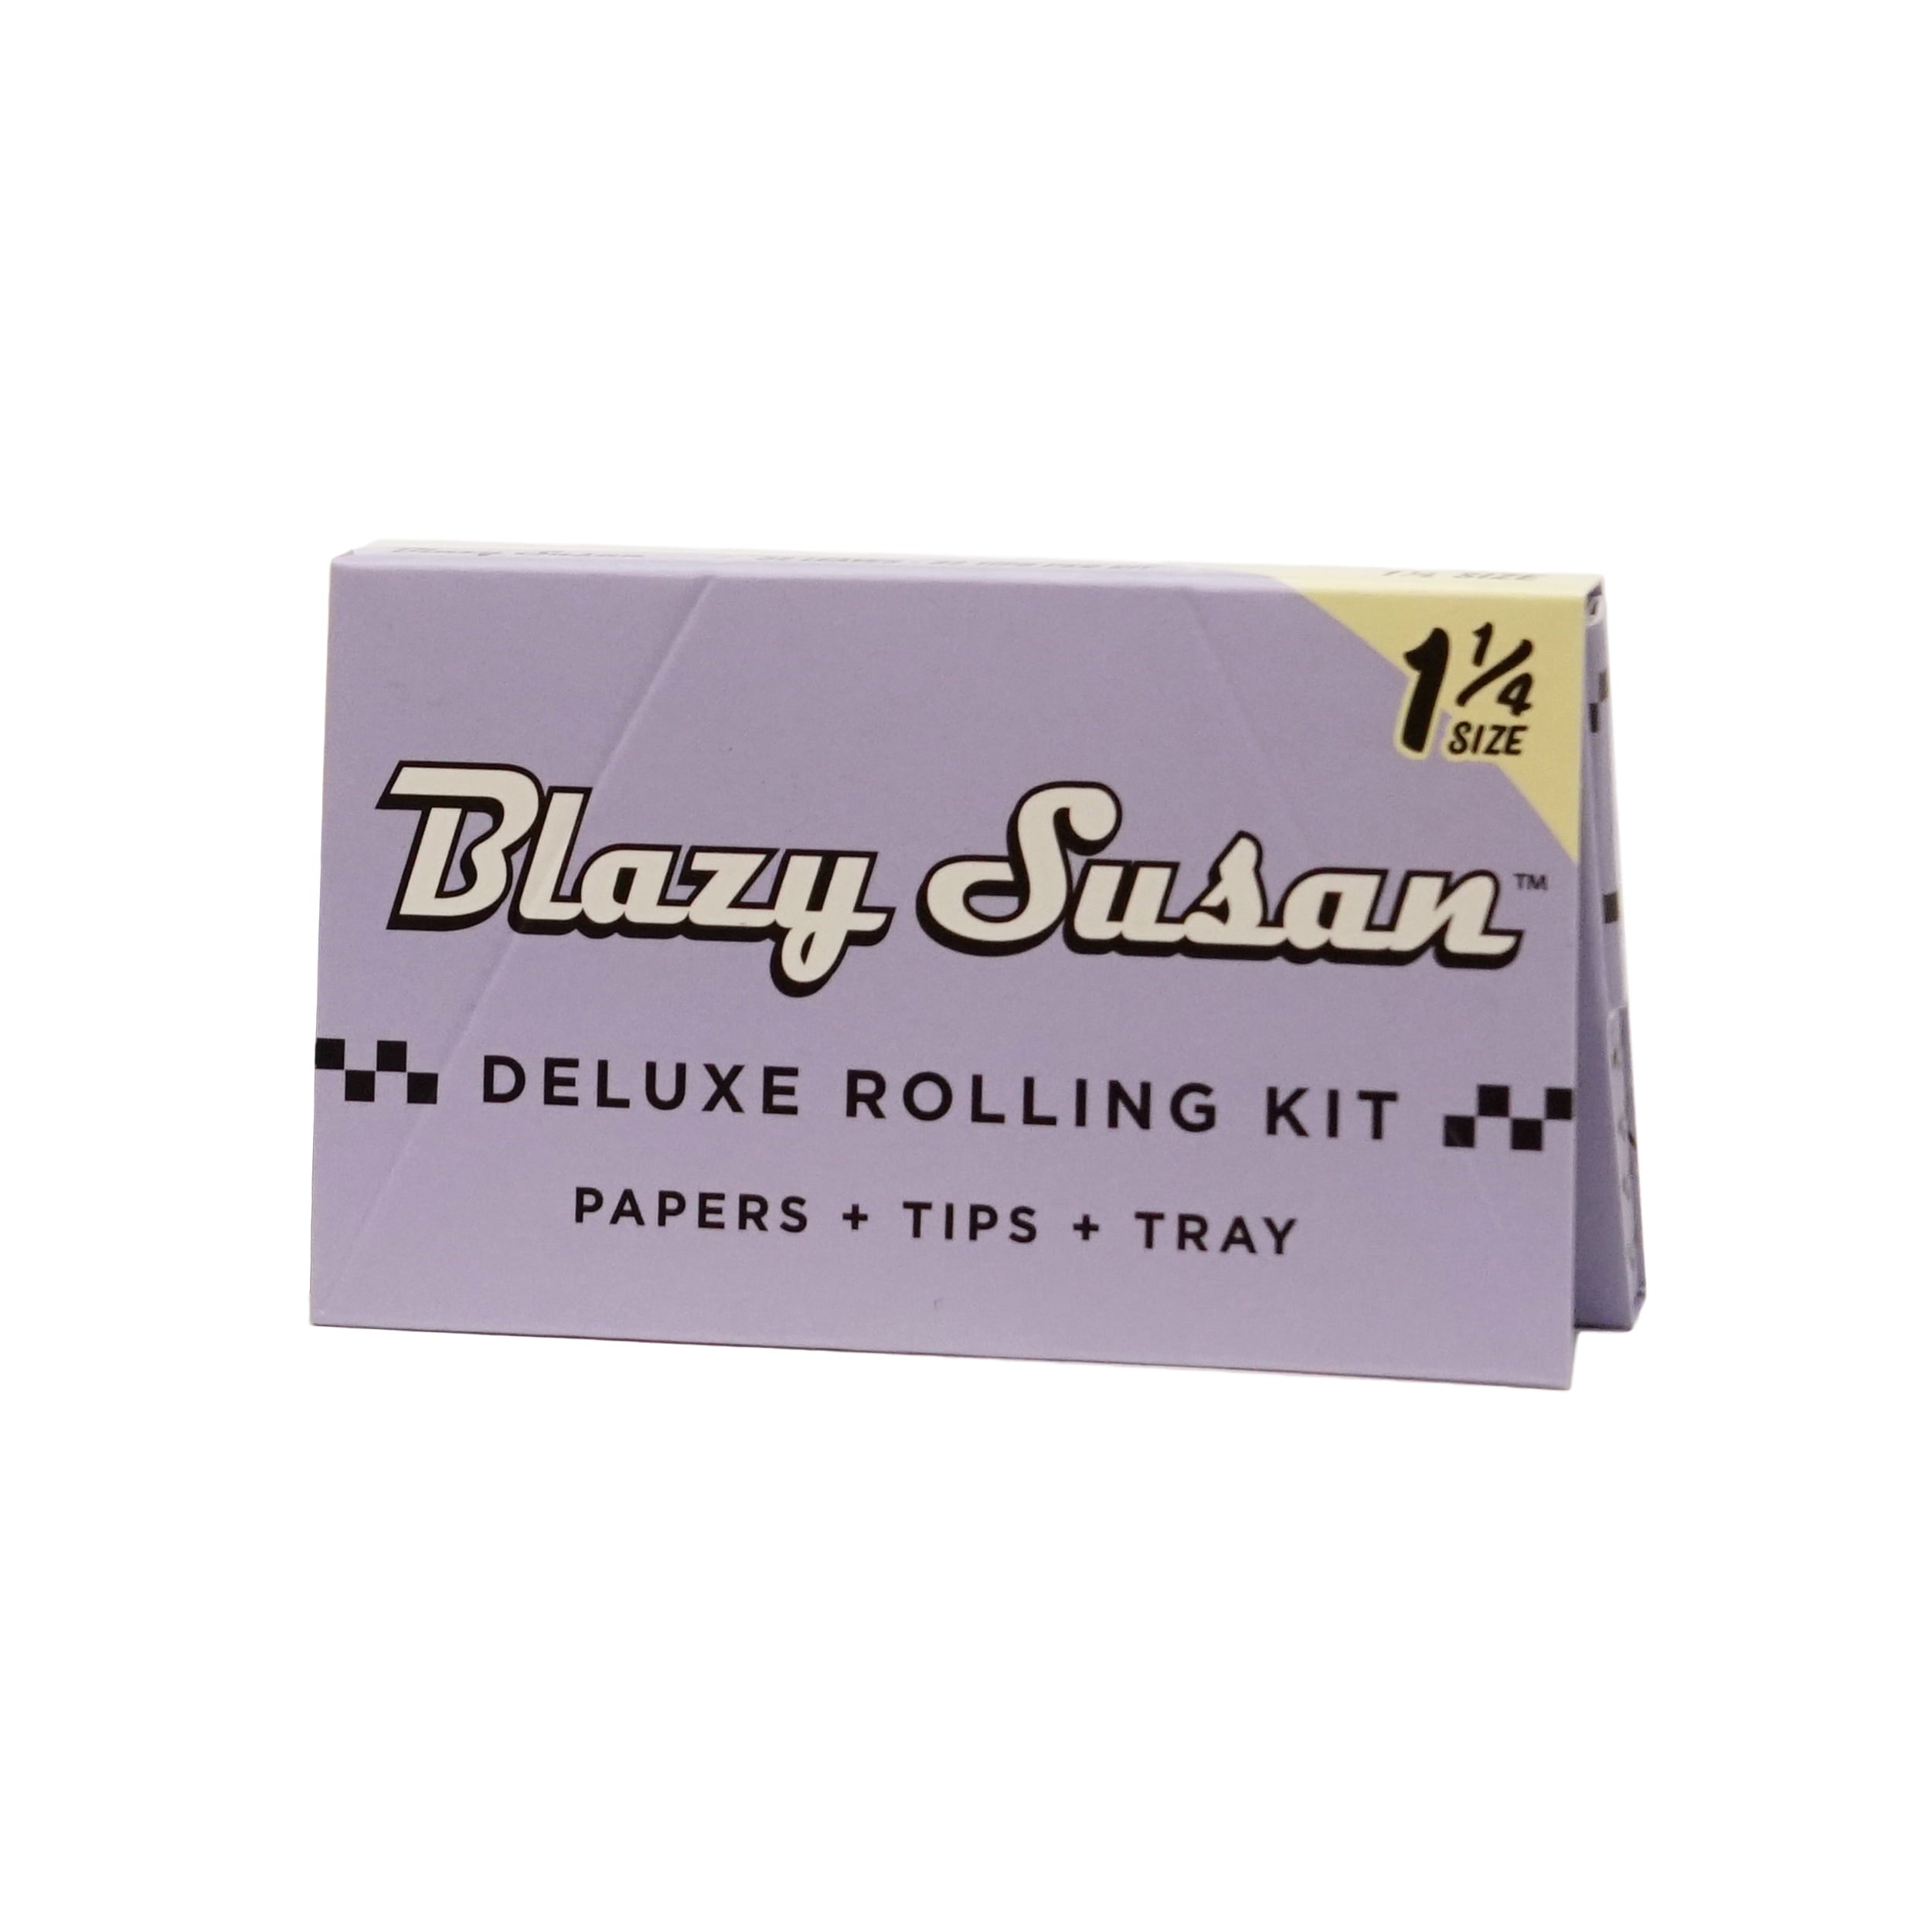 Paquete Papel Morado 1-1/4 con filtro Blazy Susan